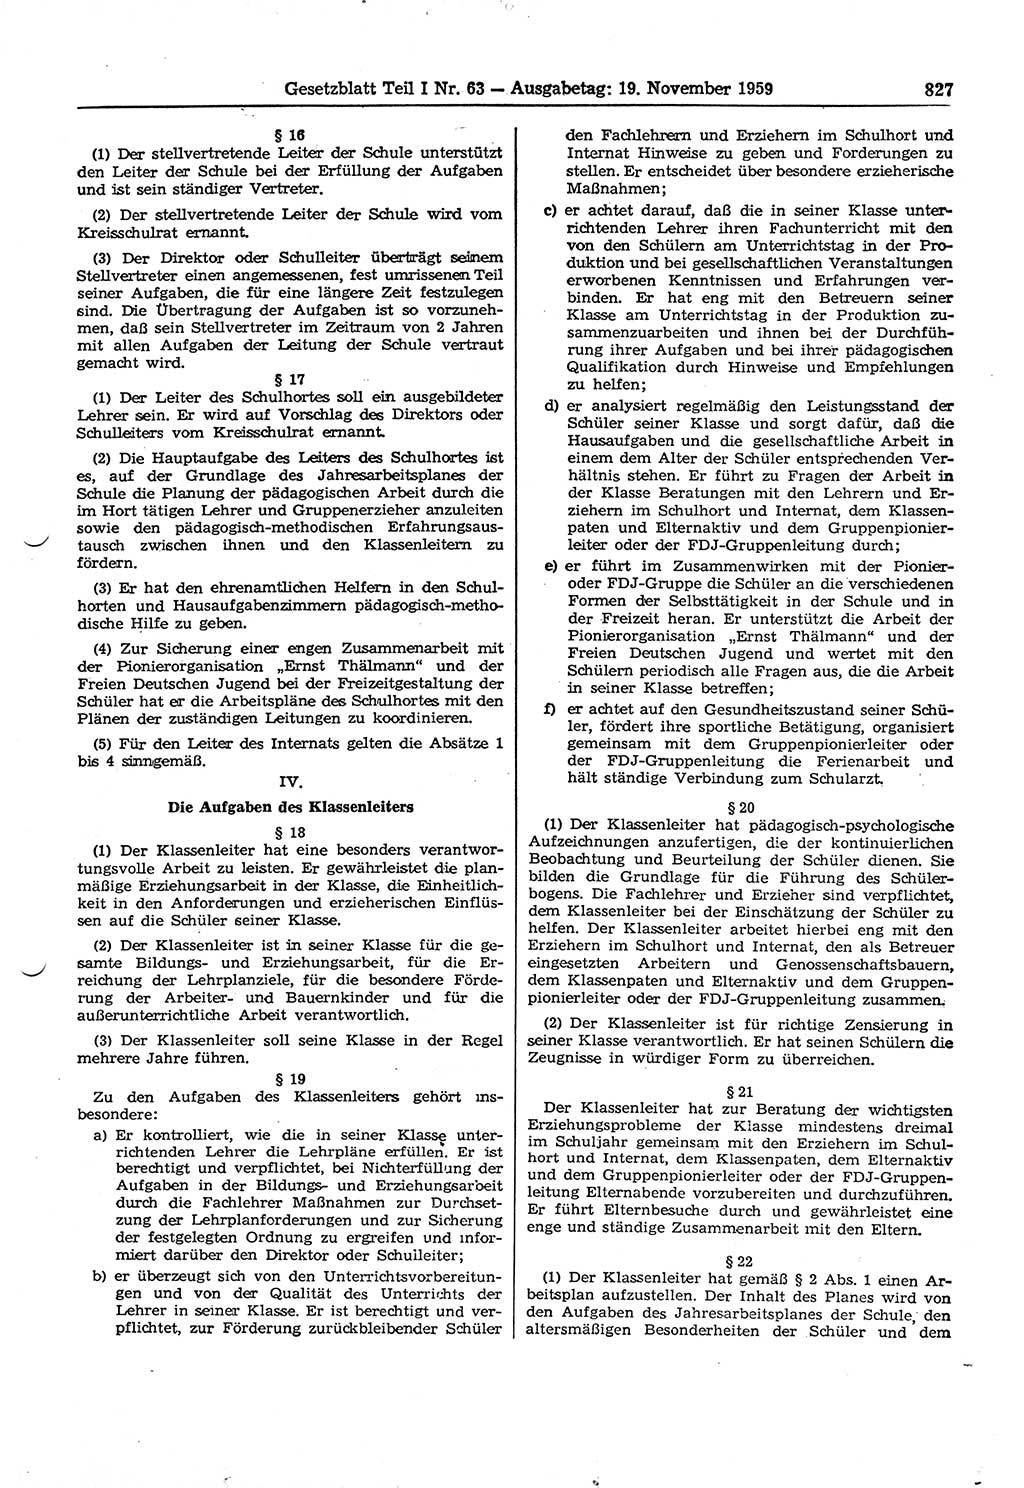 Gesetzblatt (GBl.) der Deutschen Demokratischen Republik (DDR) Teil Ⅰ 1959, Seite 827 (GBl. DDR Ⅰ 1959, S. 827)